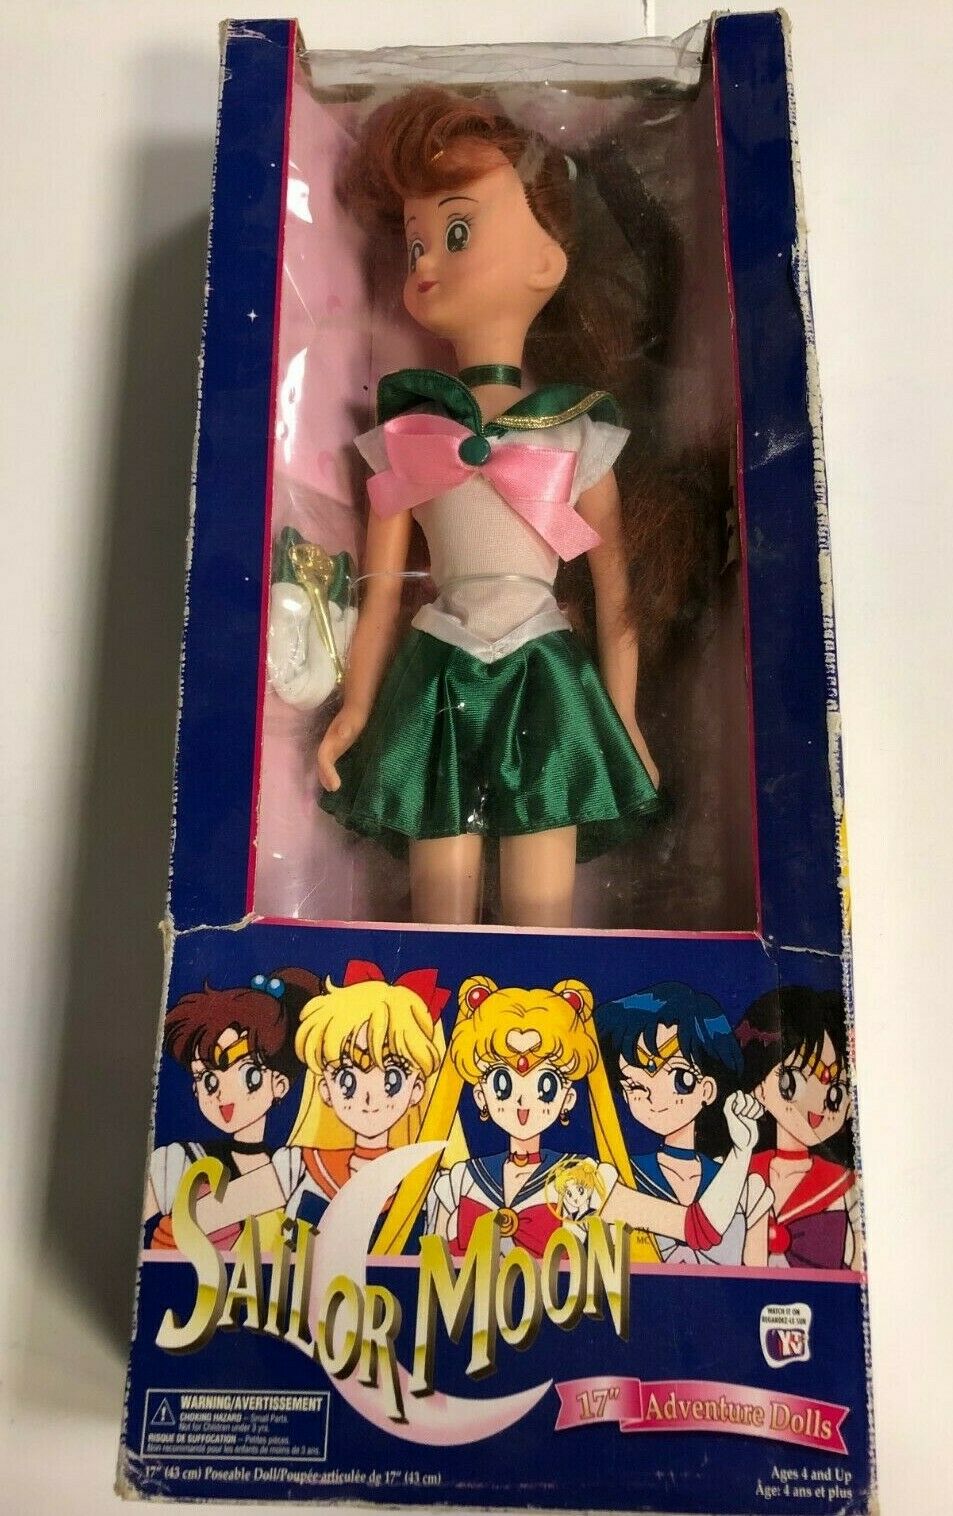 Sailor Moon 17” Adventure Doll Sailor Jupiter 1997 Irwin Toys - Damaged Box